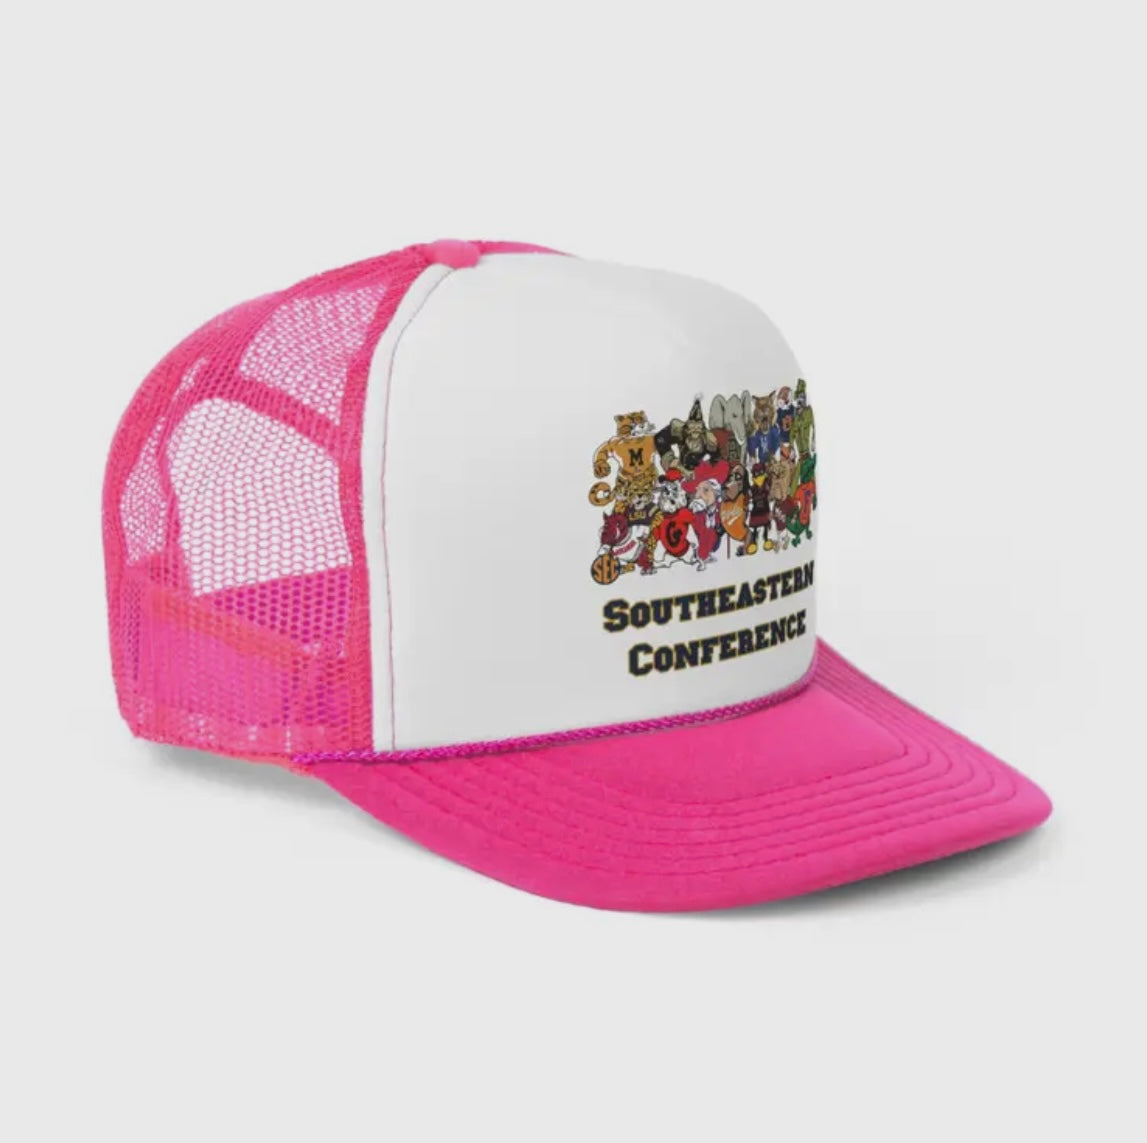 SEC Football Trucker Hat